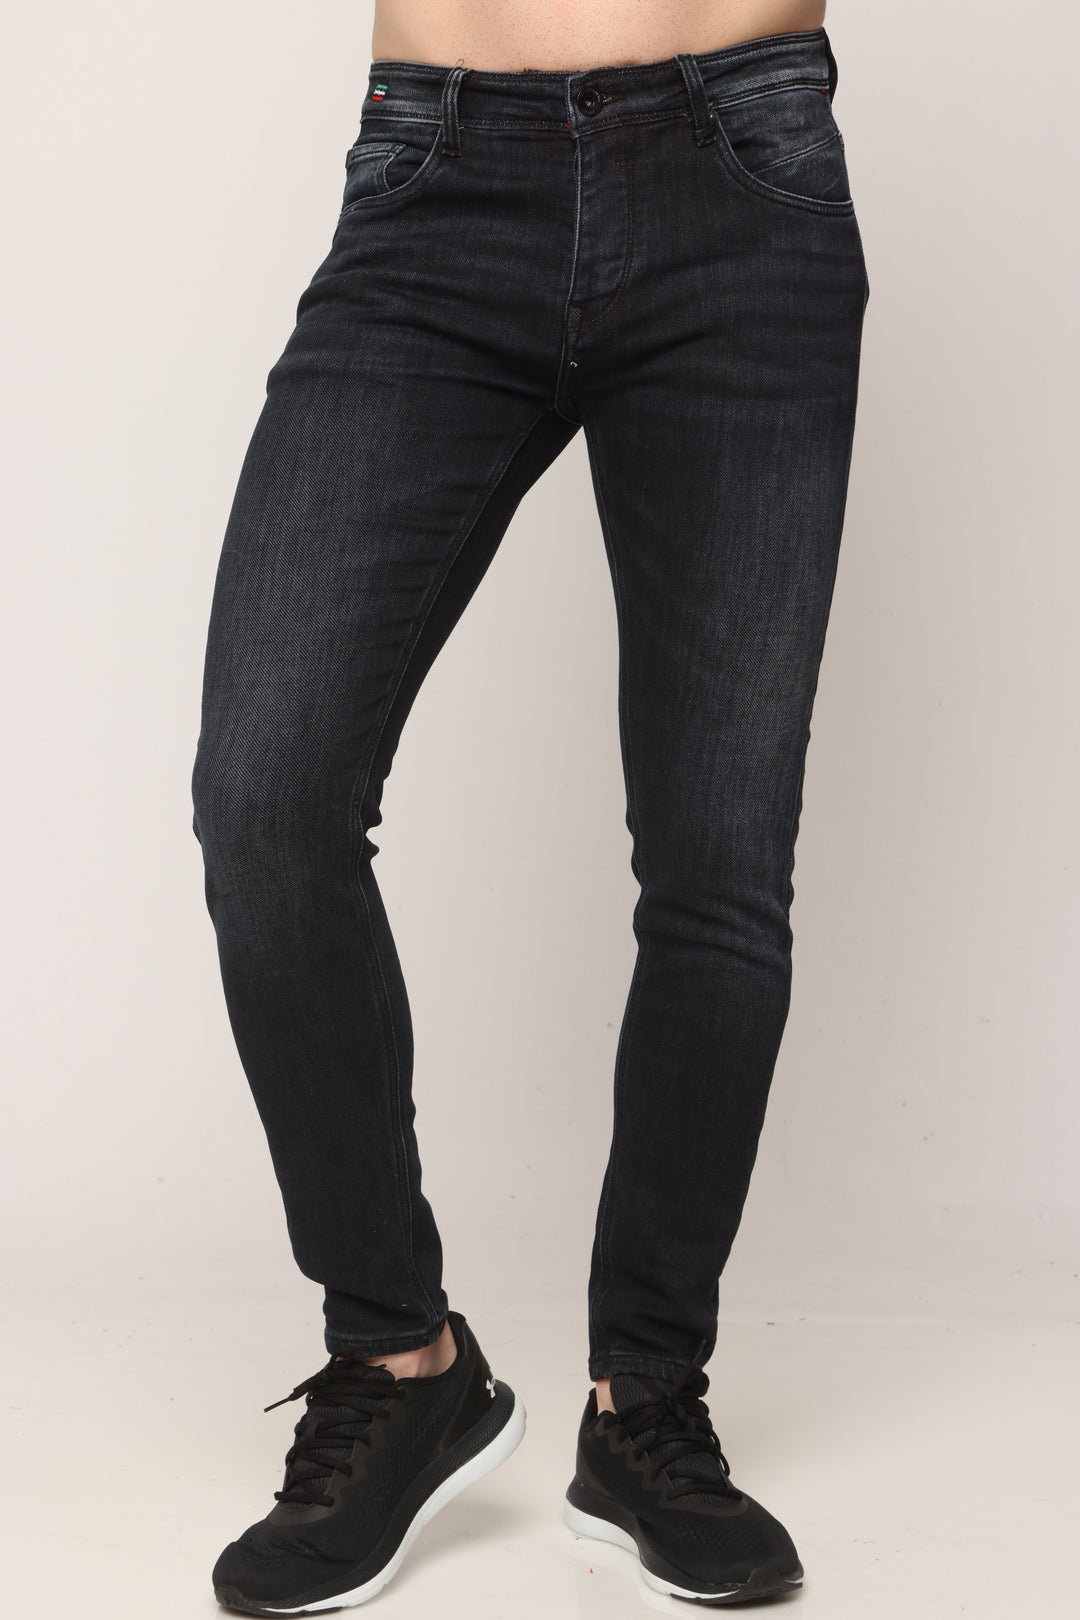 1993 ג'ינס סופר סקיני - canavaro jeans